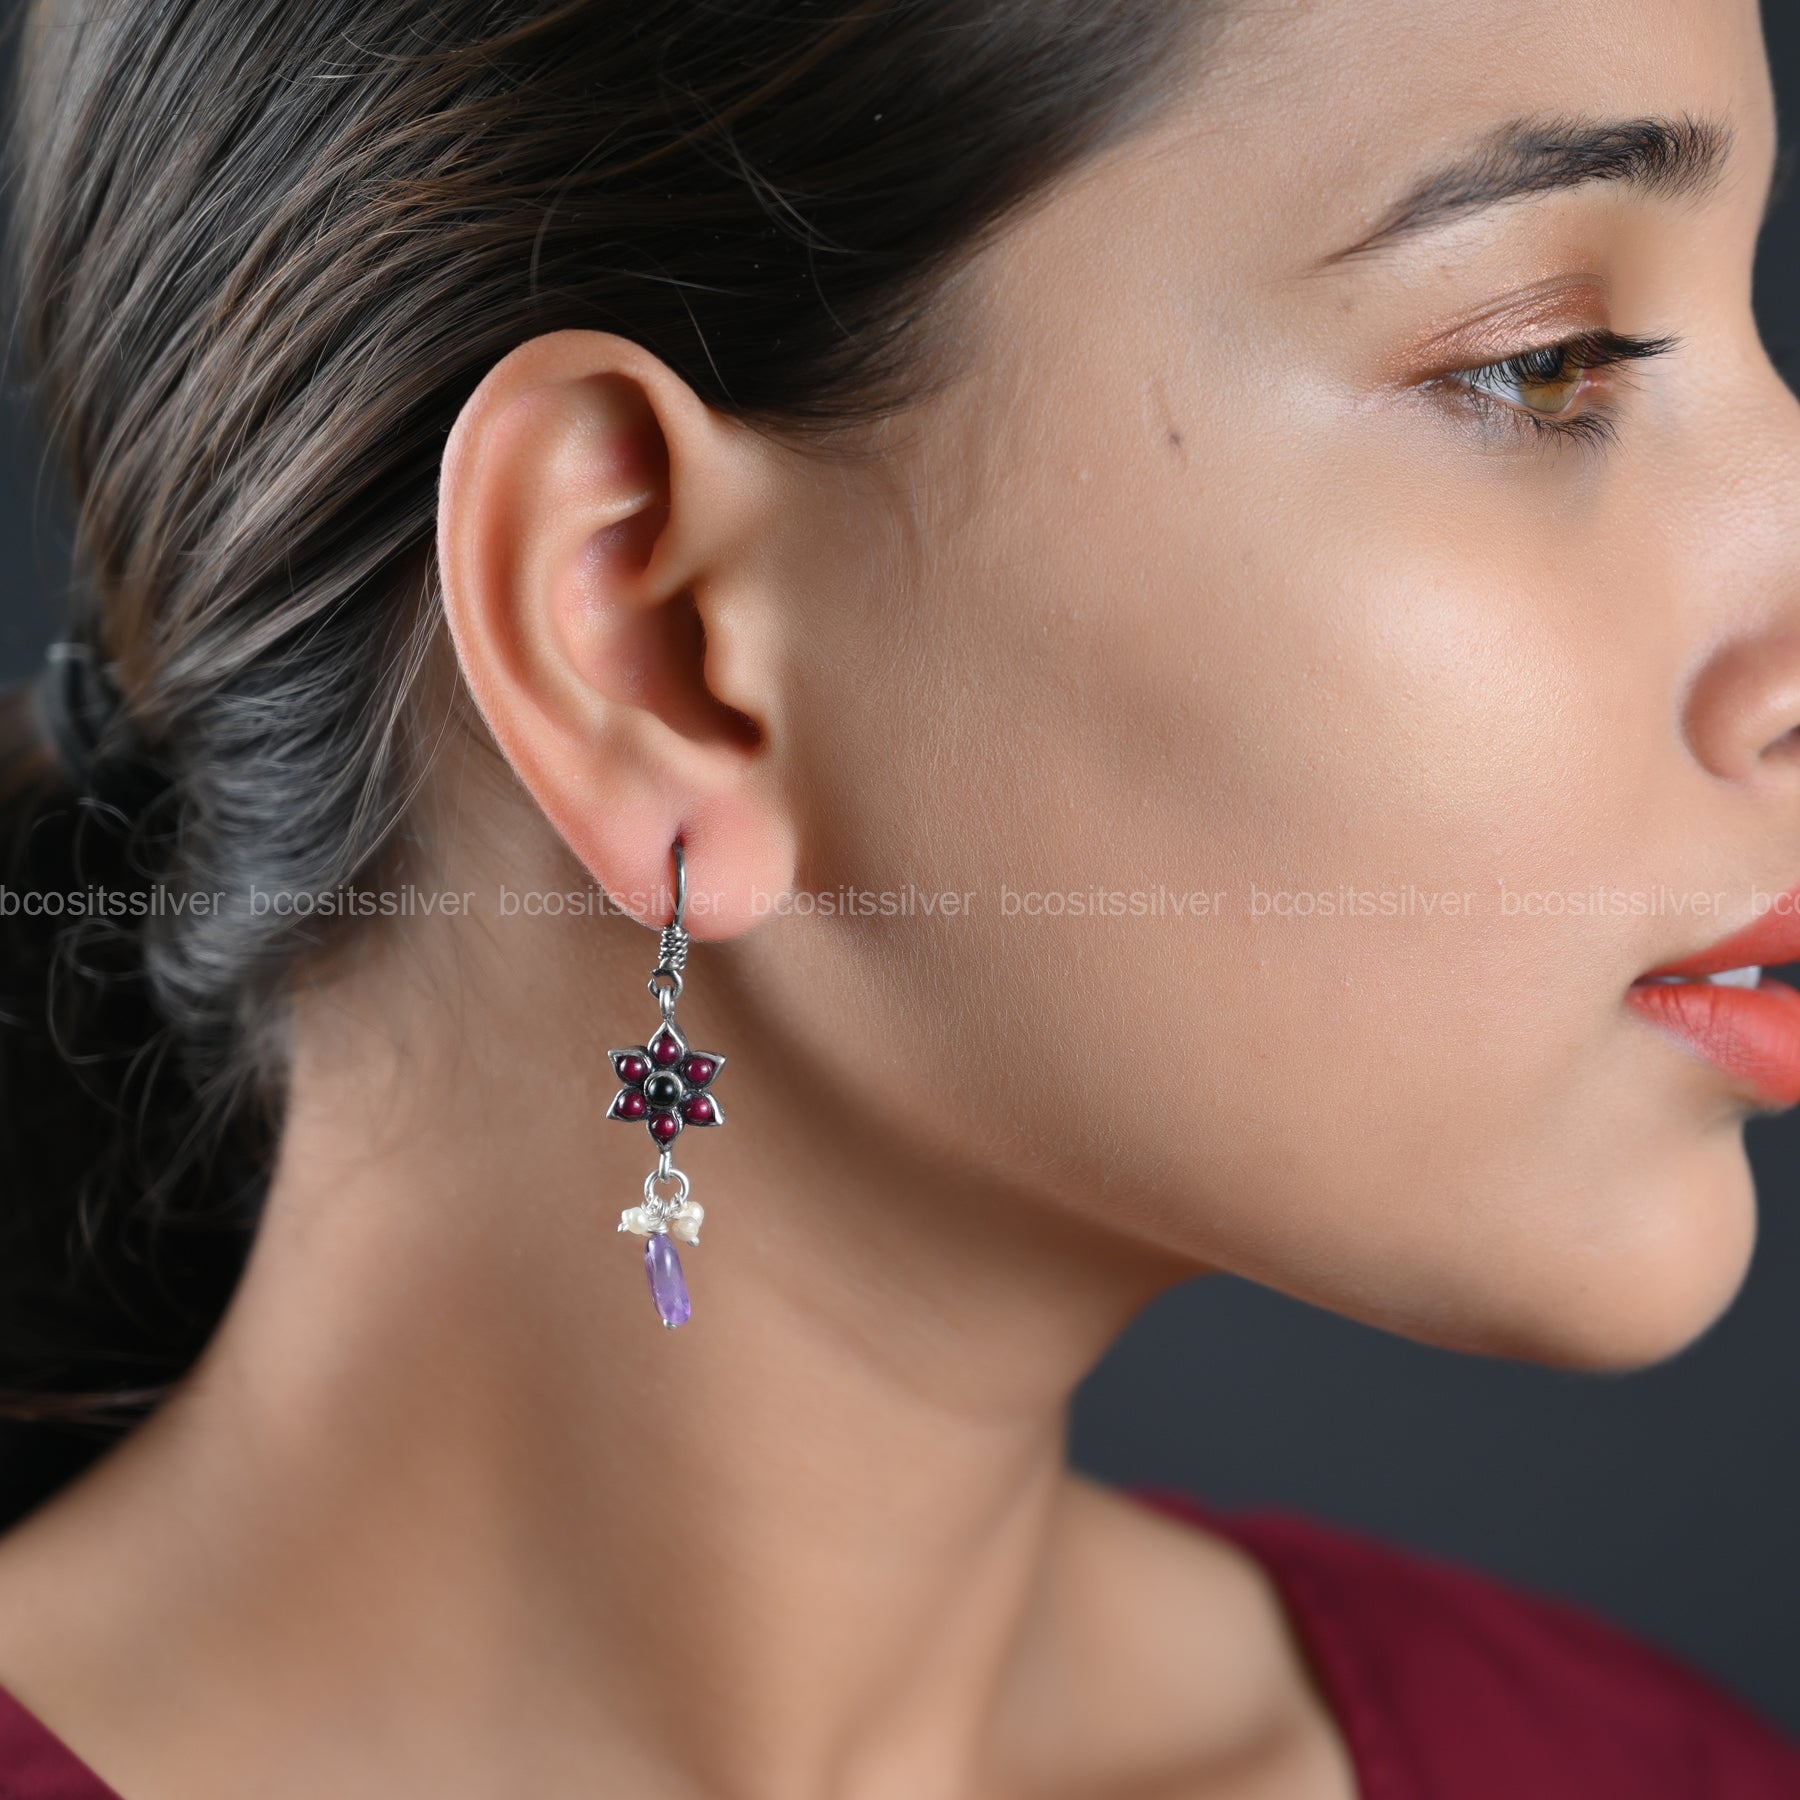 Oxidized Earring - 1100